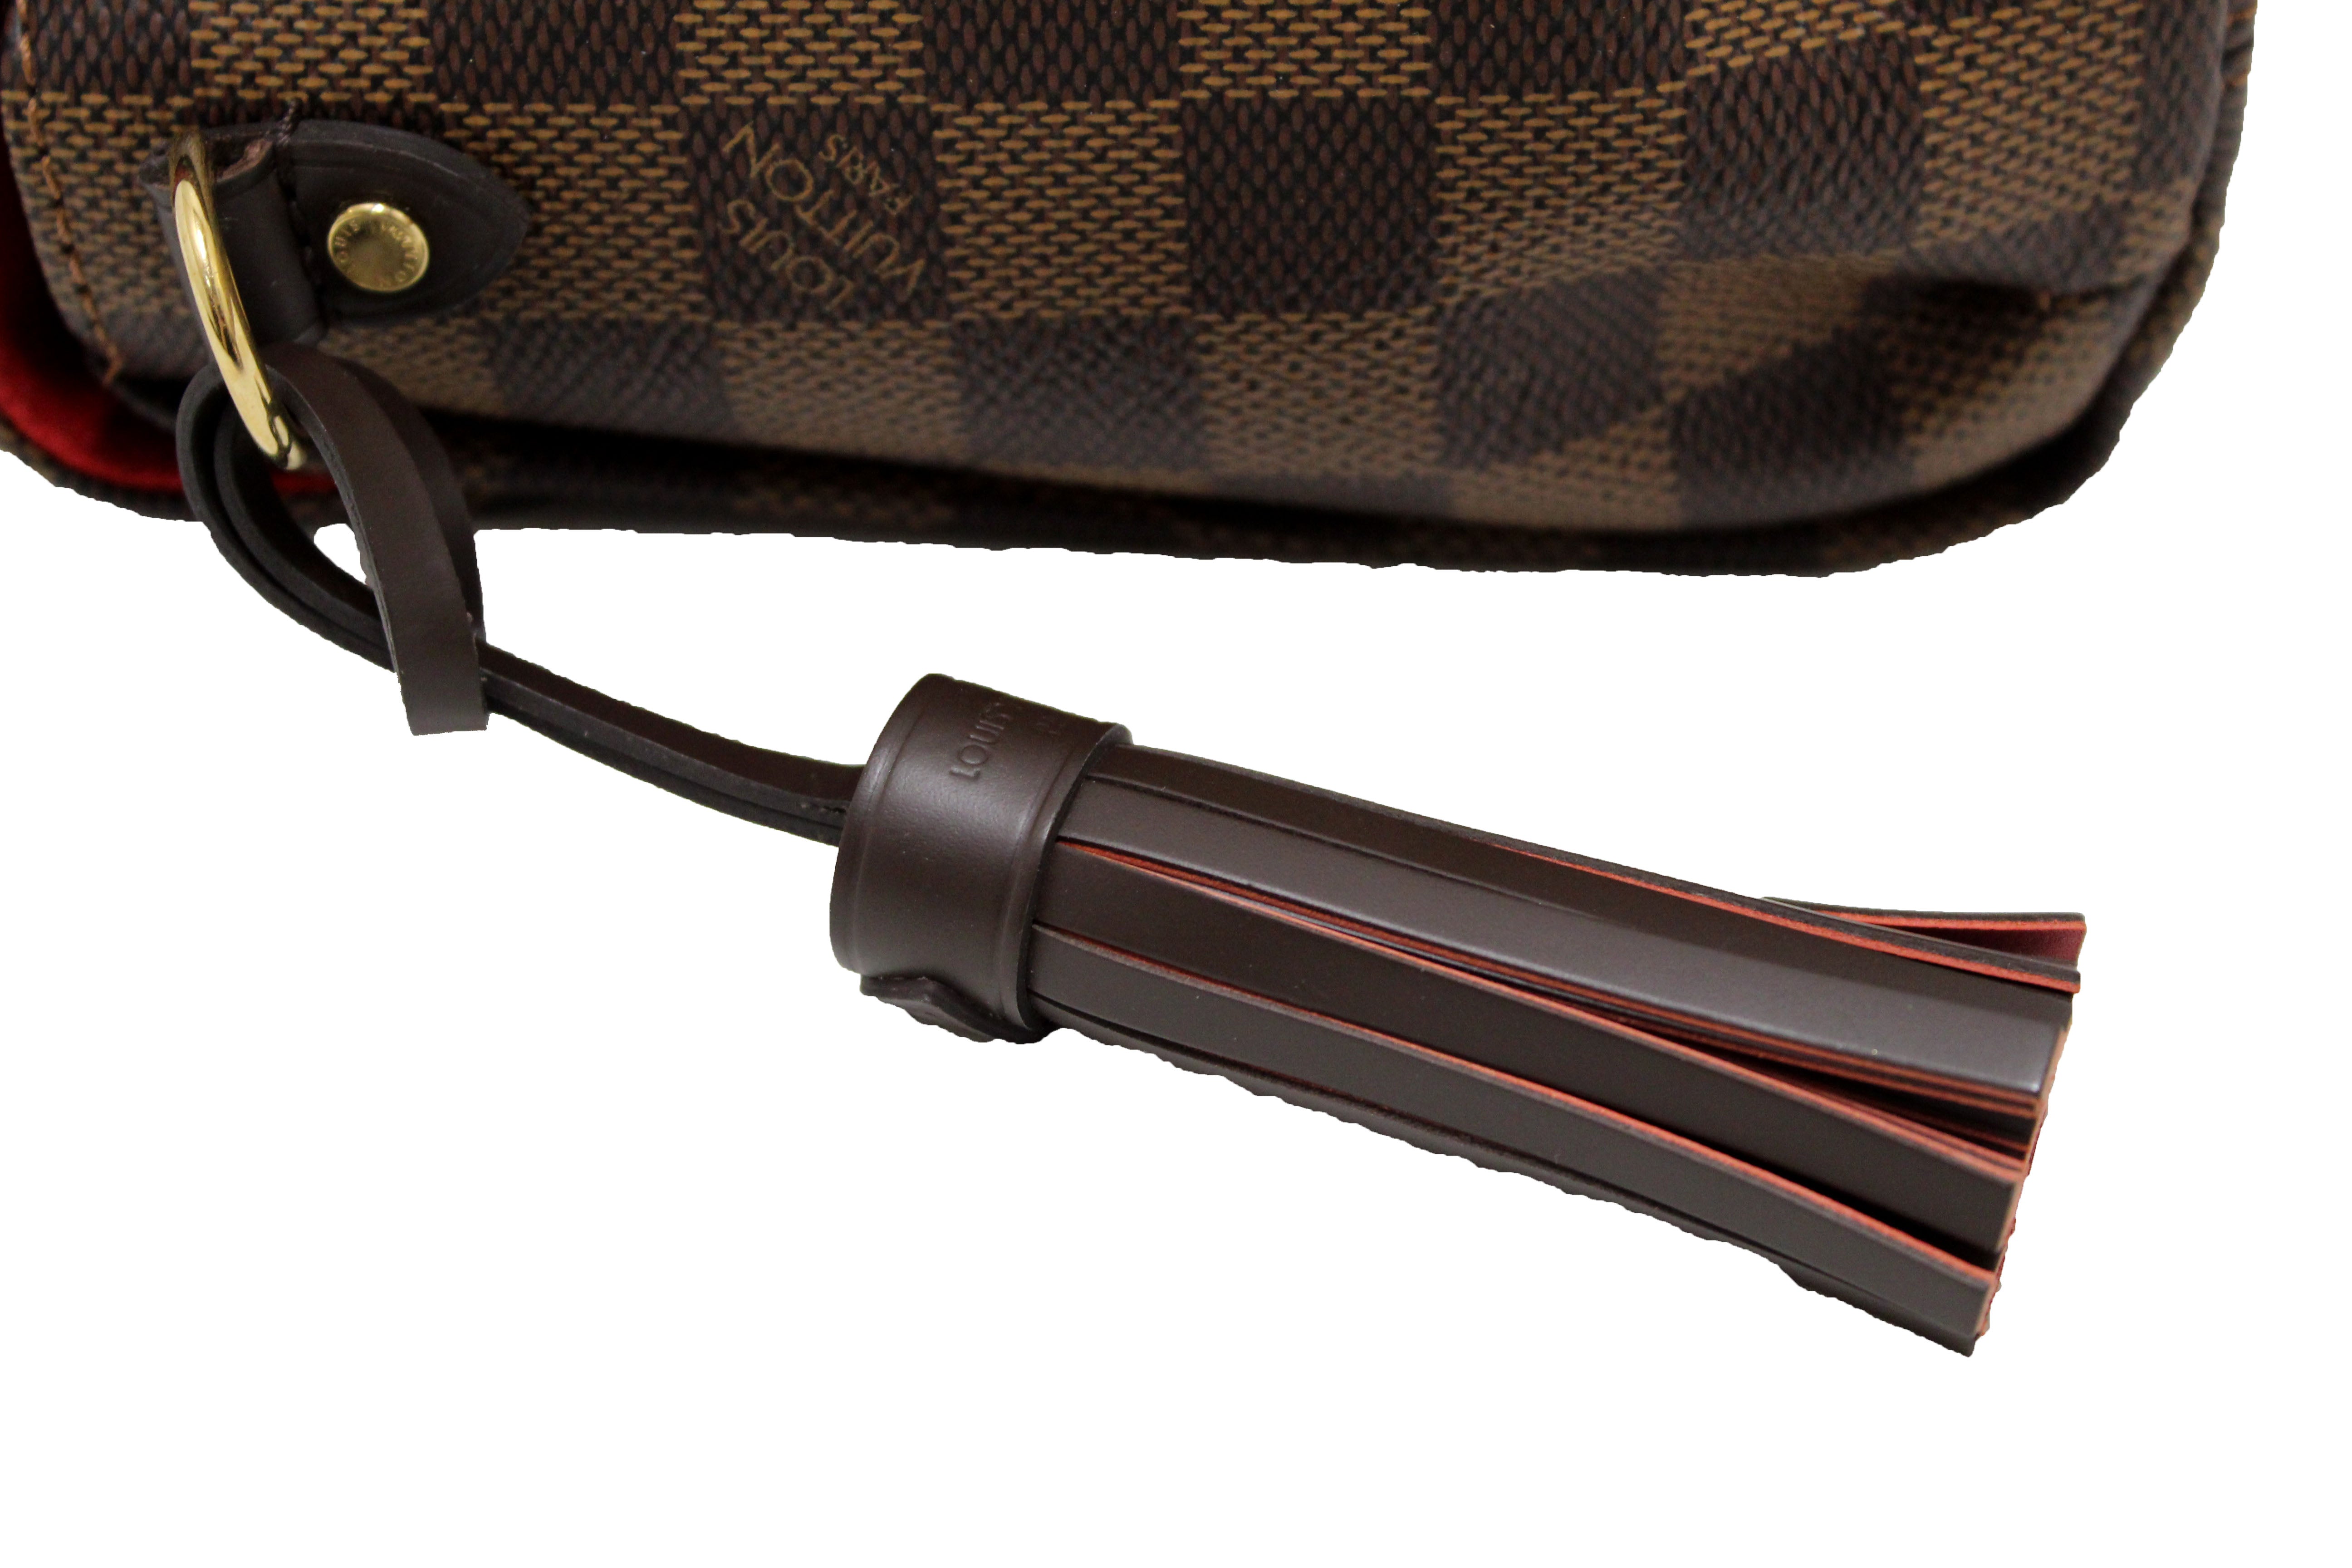 Authentic Louis Vuitton Damier Ebene Croisette Handbag/Messenger Bag